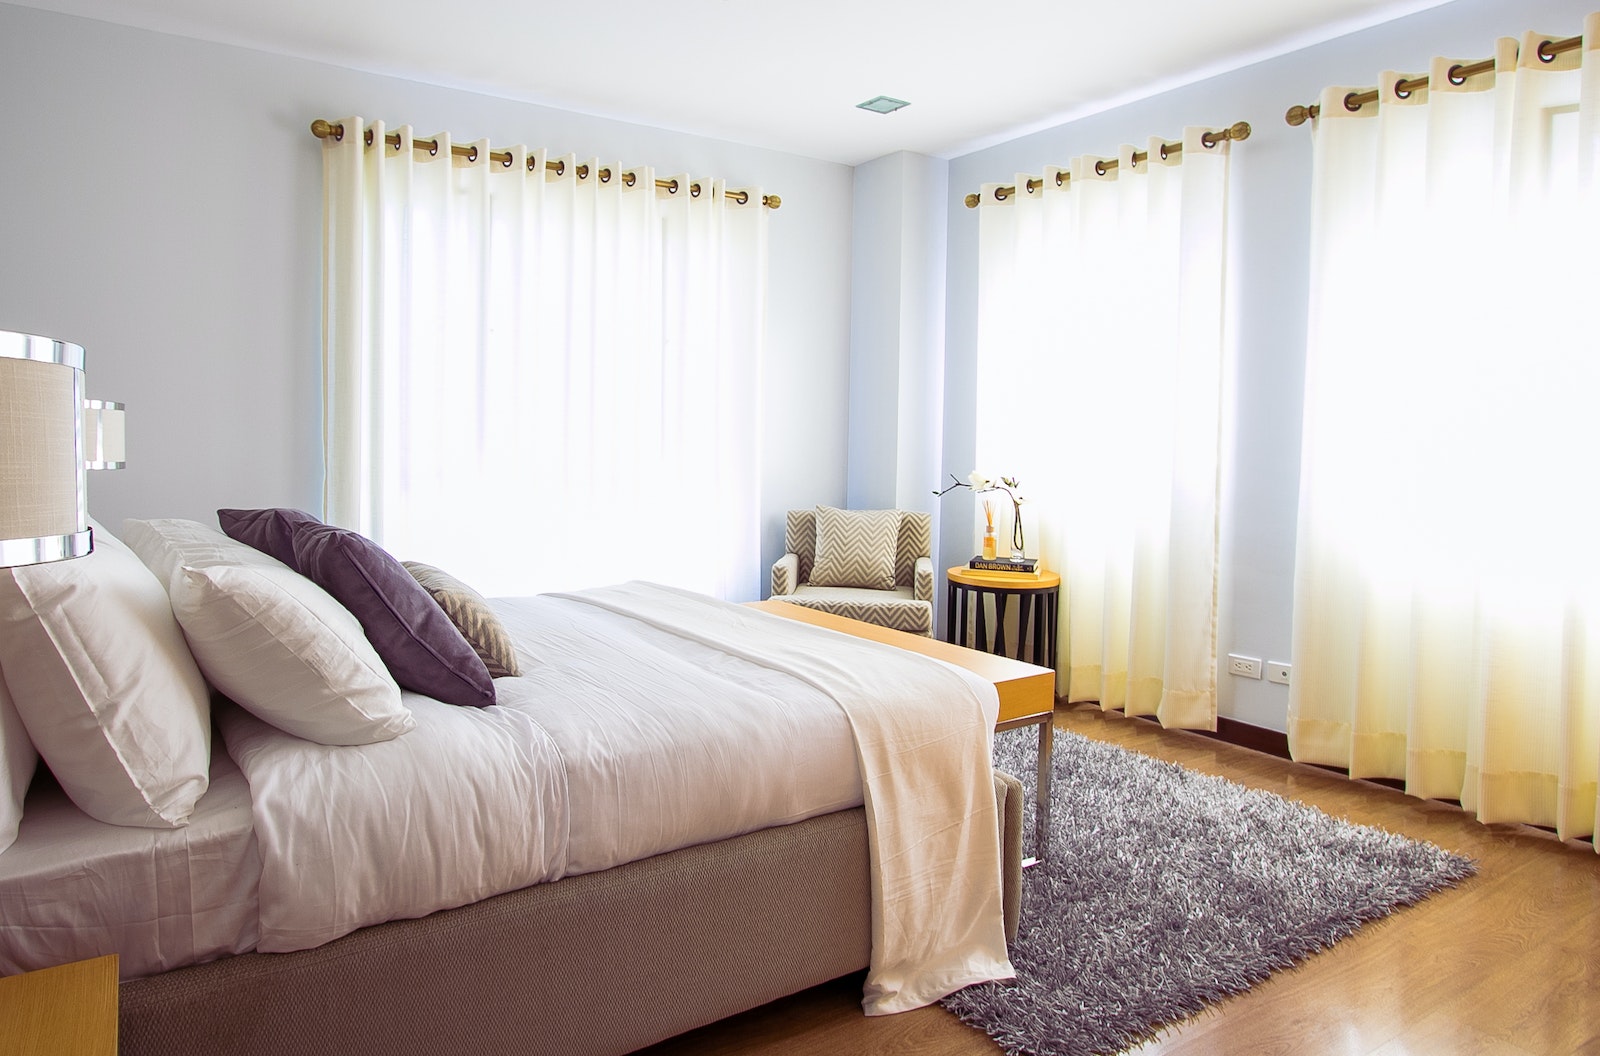 Jak stworzyć przestrzeń relaksu w małej sypialni? 10 inspirujących propozycji